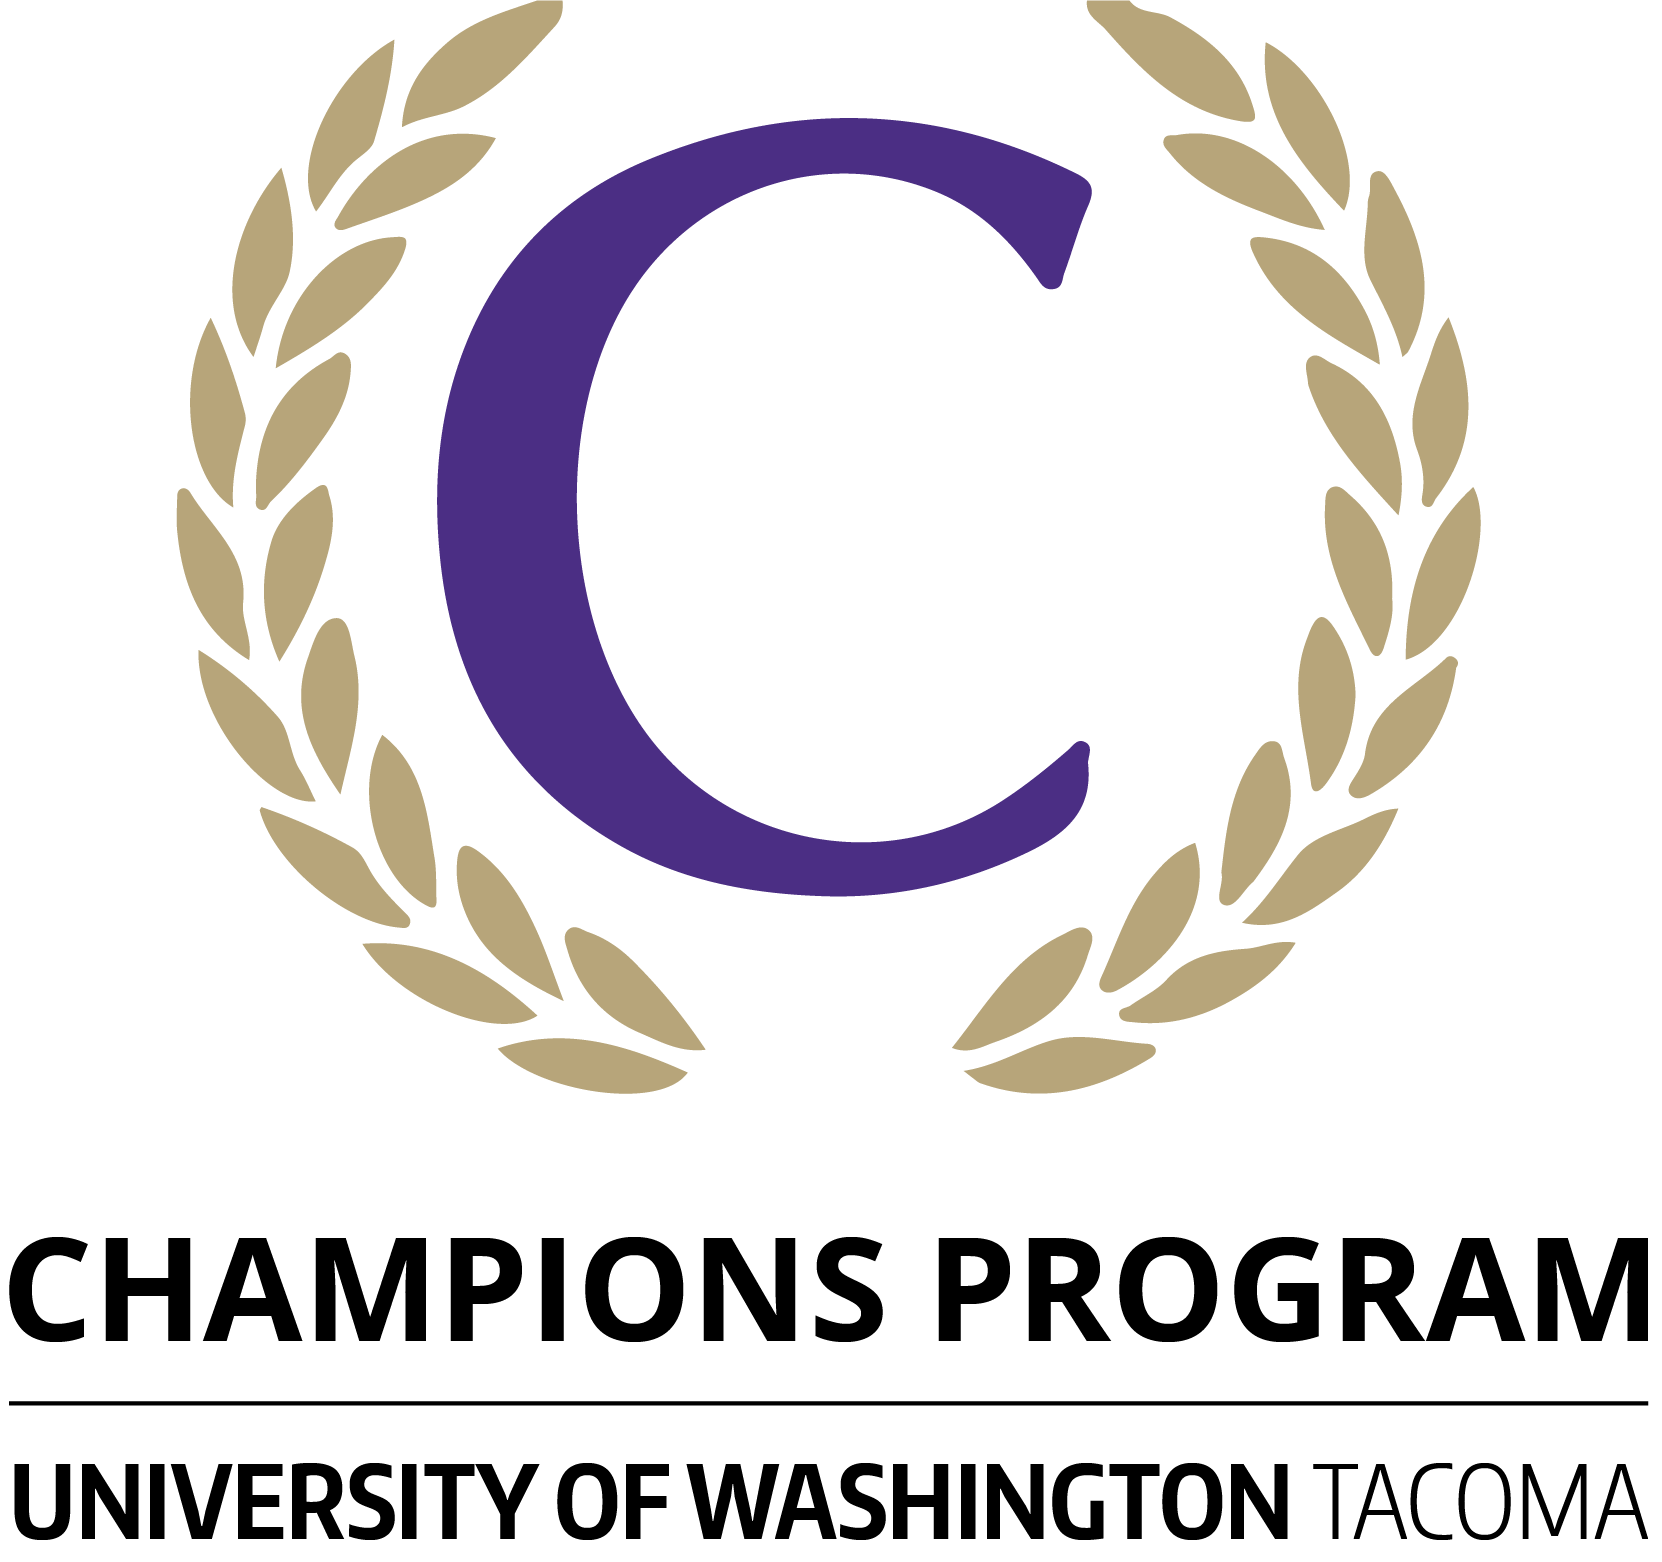 PRogram logo with letter C between laurel leaves